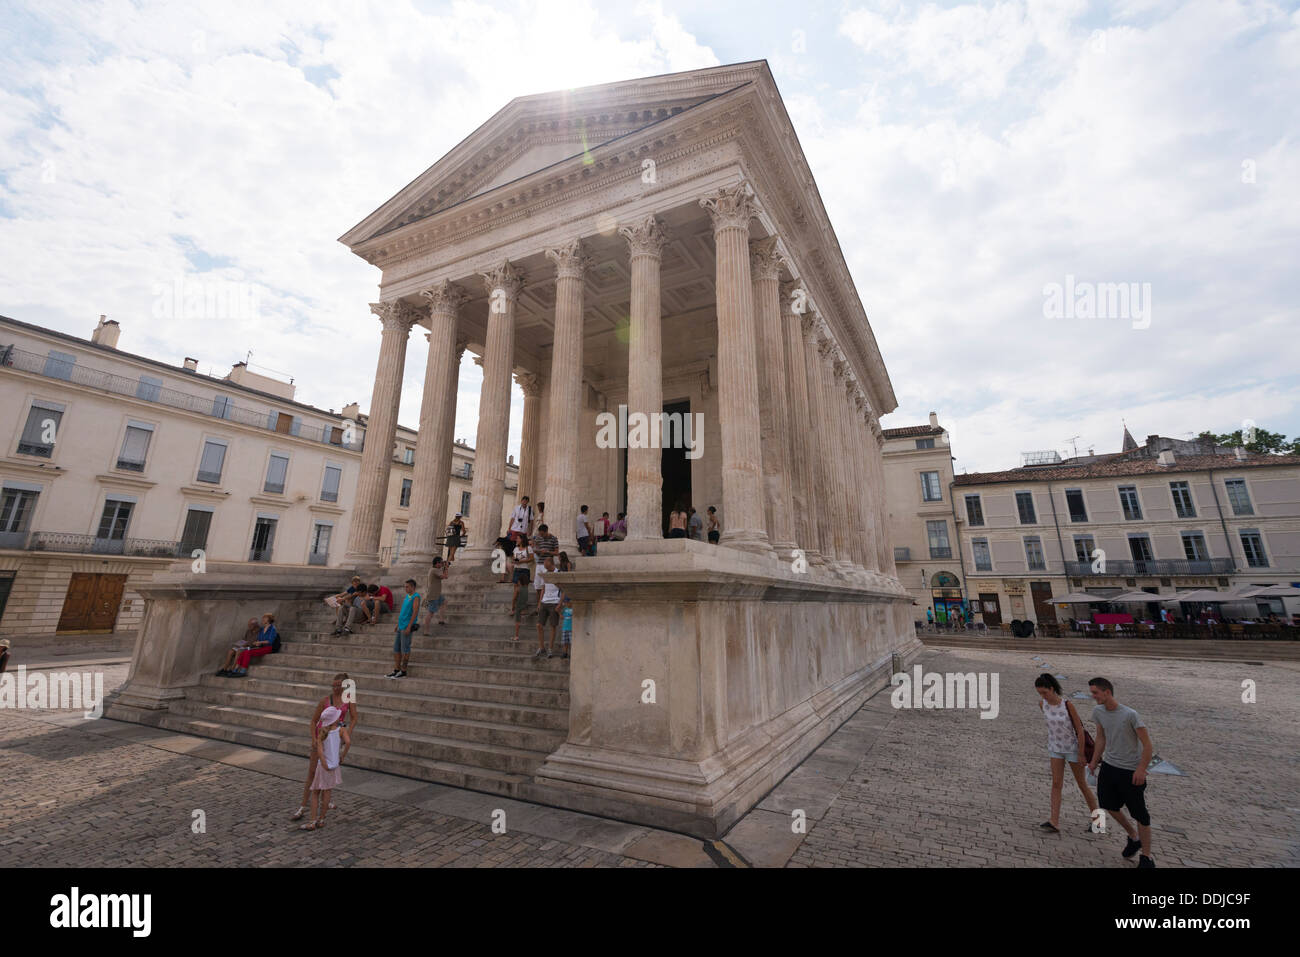 Roman 'Maison Carrée' temple in Nîmes, Languedoc-Roussillon, France Stock Photo